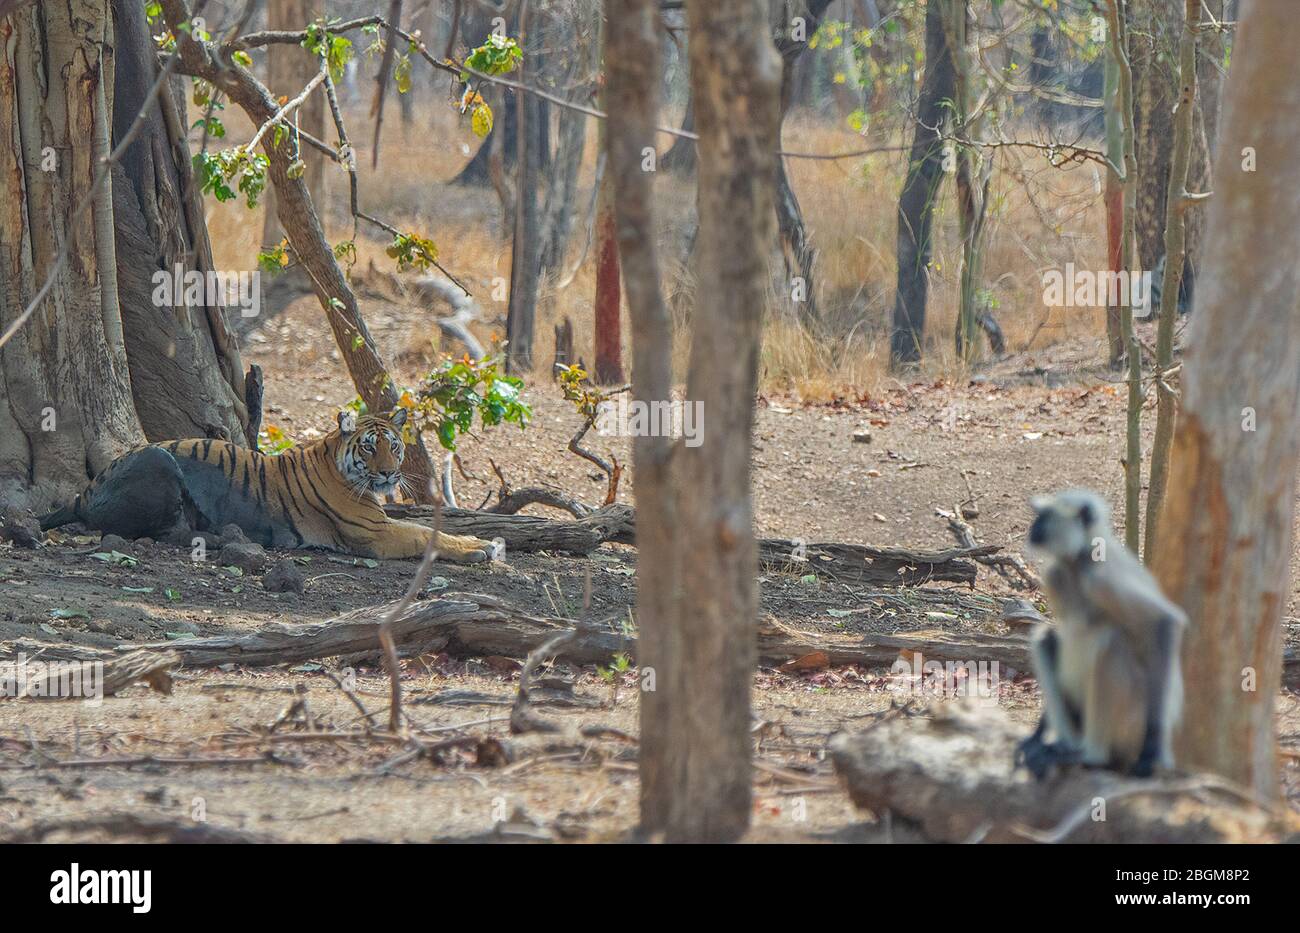 Tiger looking at Langur  at Pench National Park, Madhya Pradesh, India Stock Photo